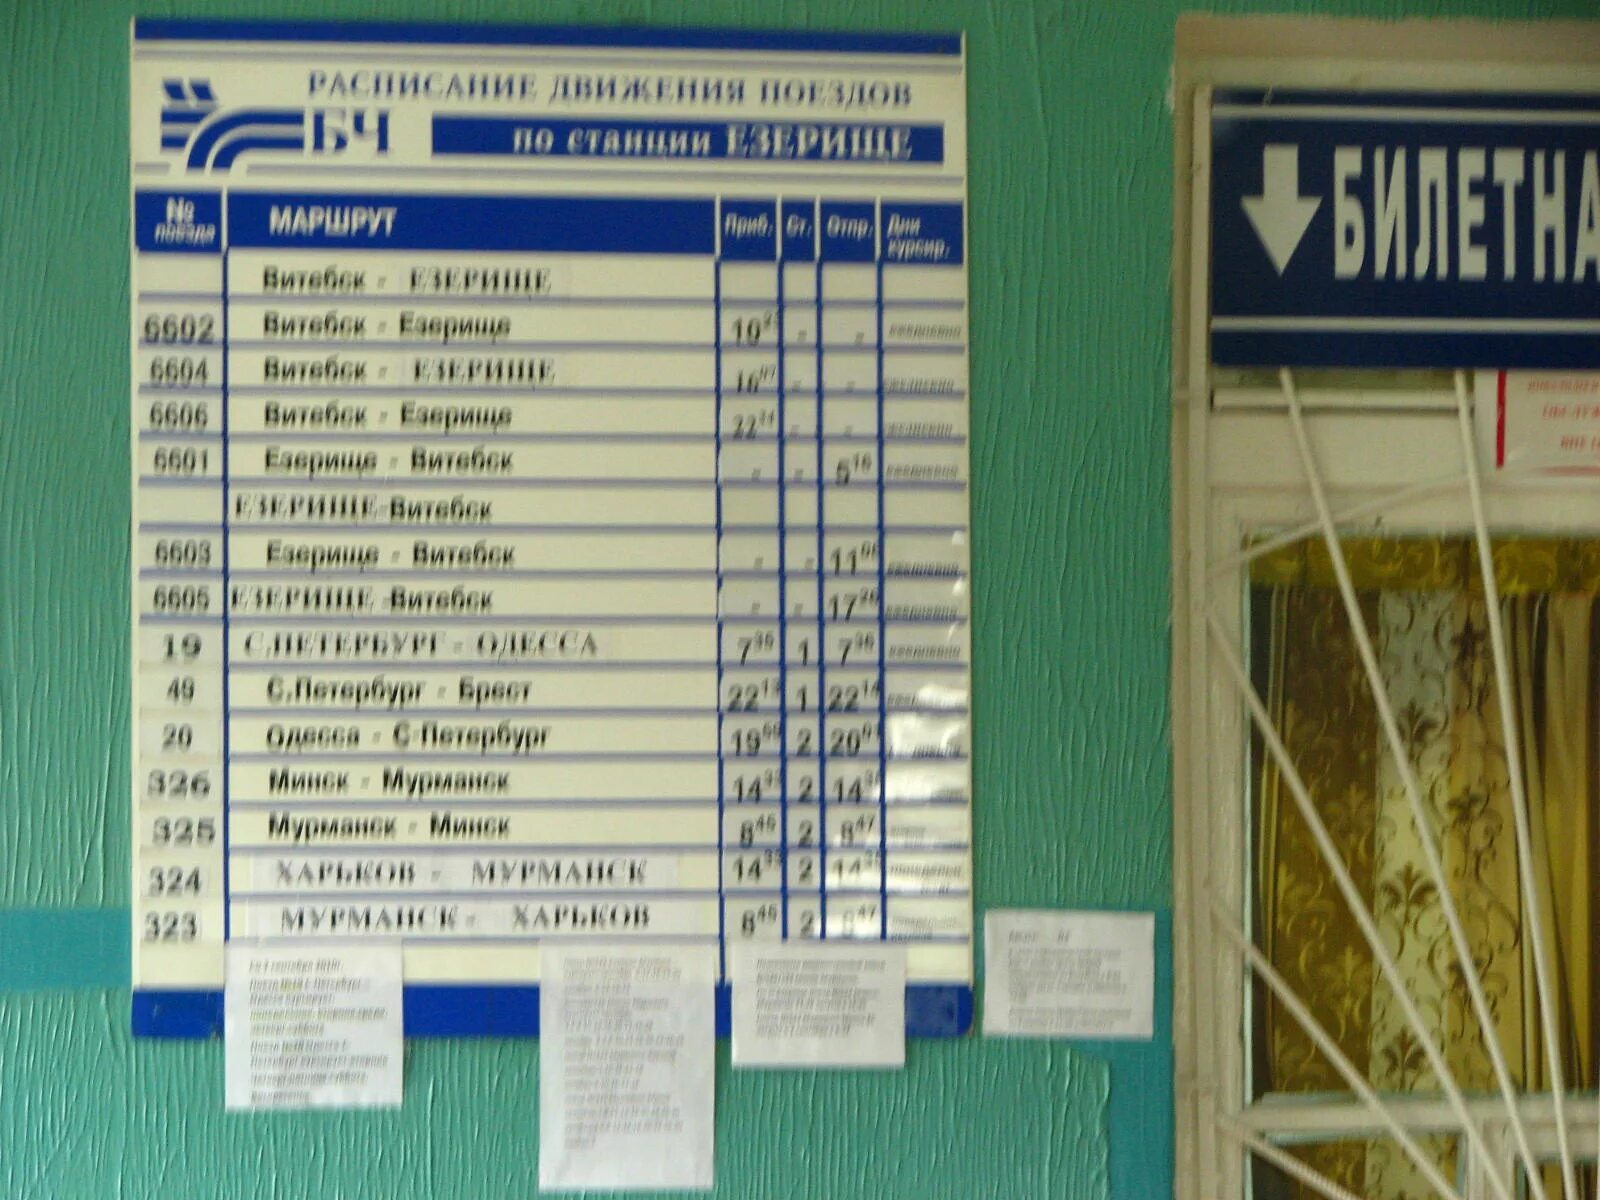 Расписание пригородного поезда Витебск-Езерище. Станция Езерище. ЖД станция Езерище. Автостанция Освея.